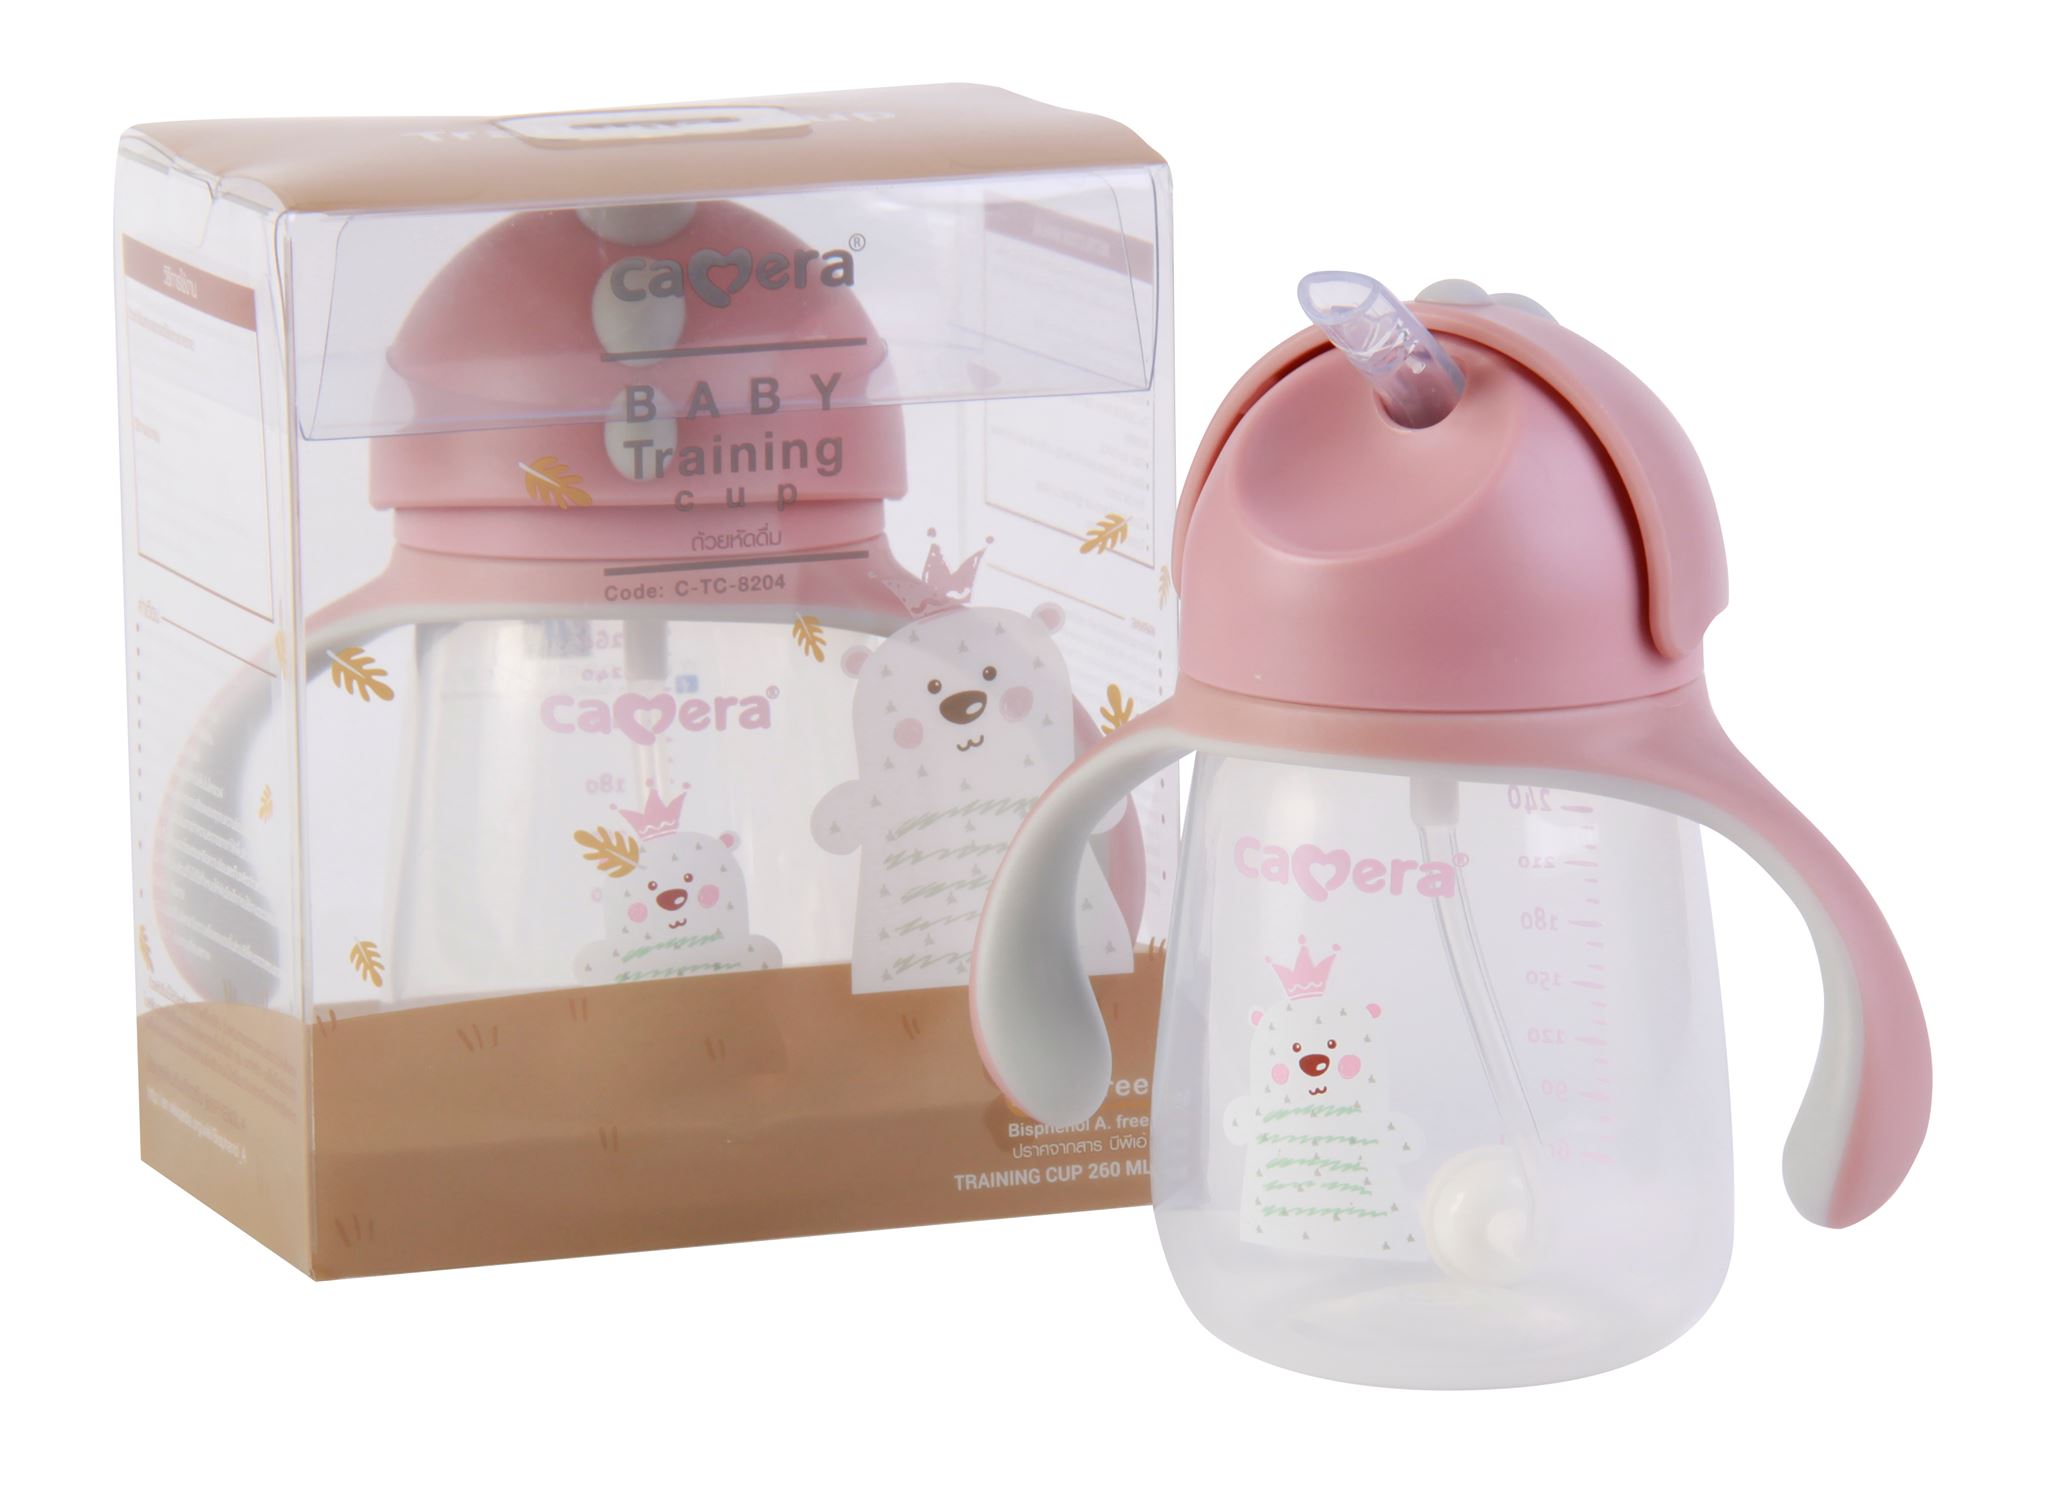 แก้วหัดดื่ม / ถ้วยหัดดื่ม Baby Training Cup สำหรับเด็ก 6 เดือนขึ้นไป ยี่ห้อ Camera  สีวัสดุ ฝาสไลด์ : หมีชมพู